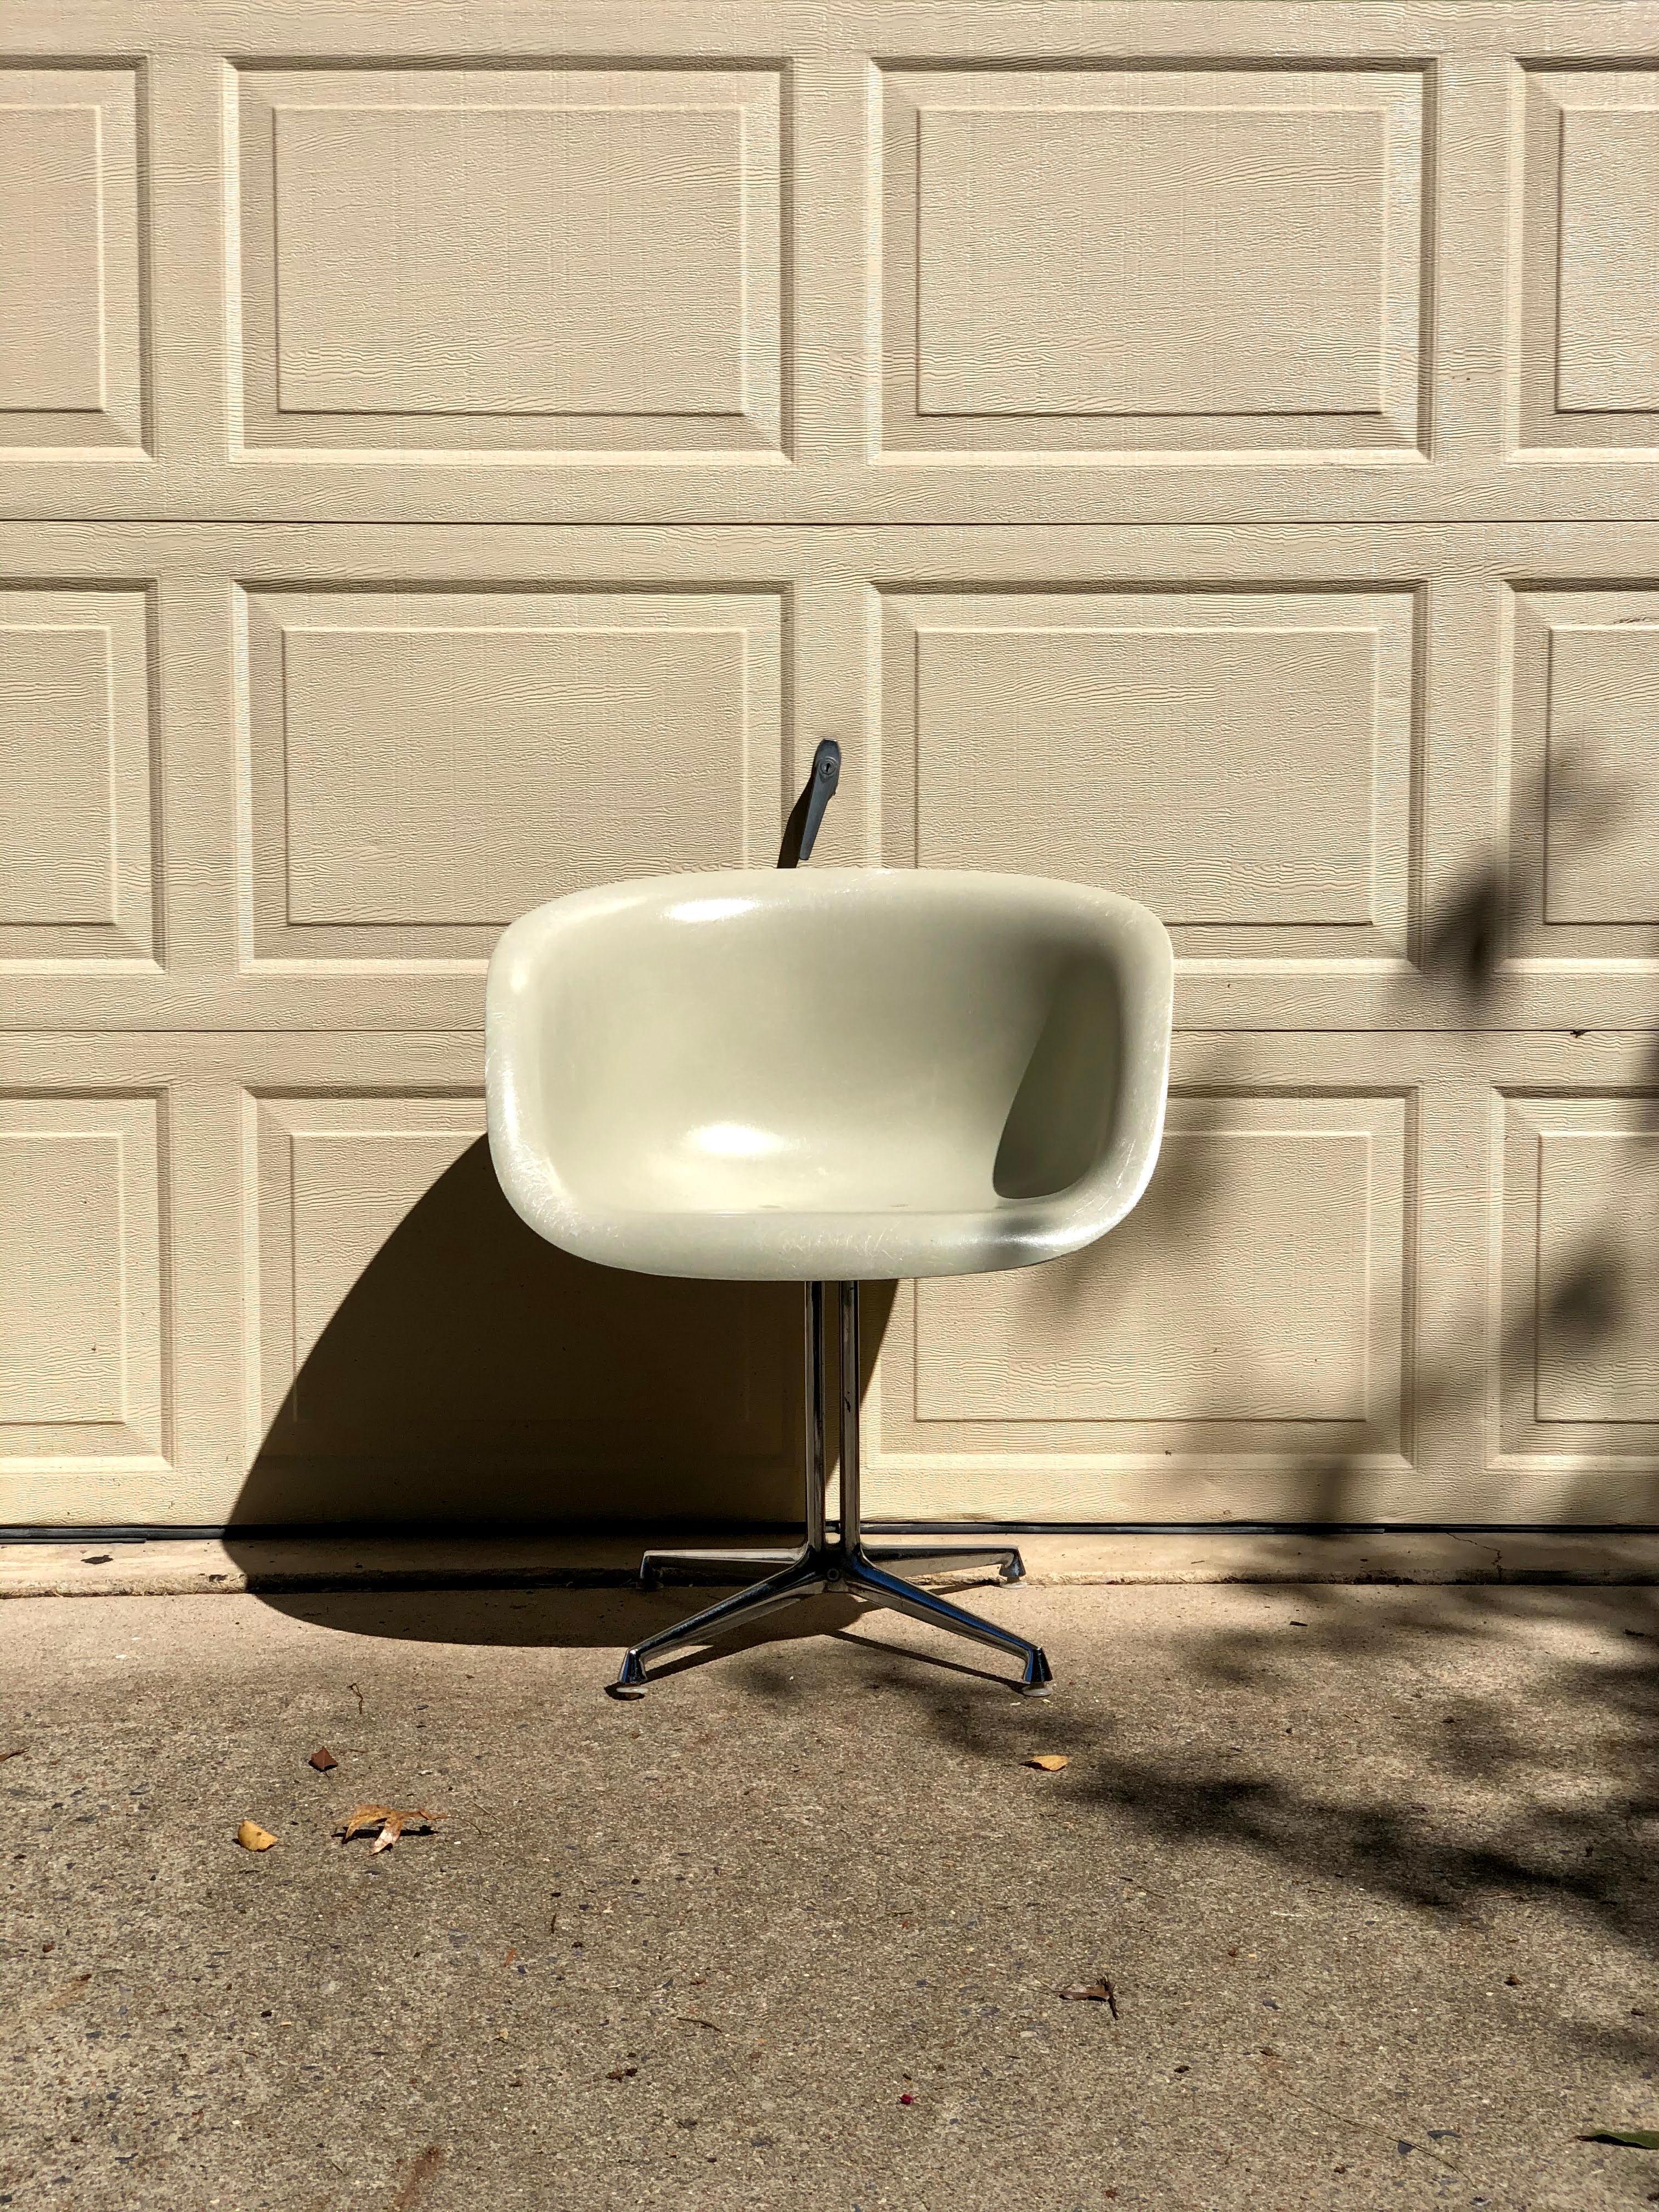 Ce fauteuil est l'une des deux nouvelles chaises en fibre de verre que Charles et Ray Eames ont conçues en 1961, à la demande d'Alexander Girard, qui avait besoin de sièges pour son nouveau restaurant de Manhattan, La Fonda Del Sol. Certains